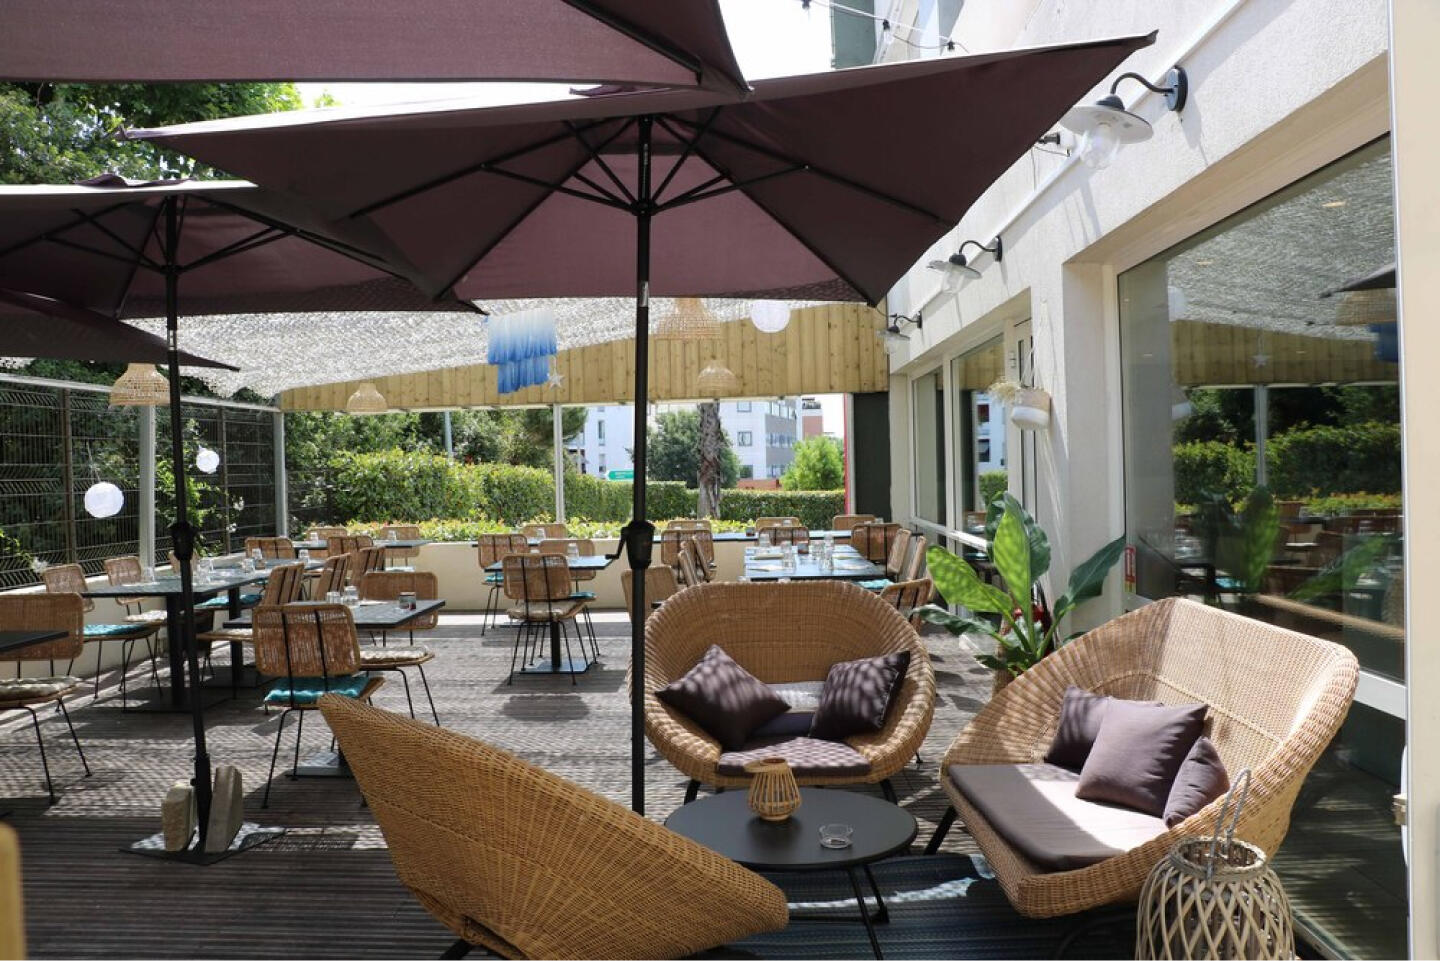 Außenterrasse des Restaurant Bistrot City Montpellier Ovalie mit bequemen Korbsesseln unter einem großen braunen Schirm, für das Essen gedeckten Tischen und grünen Pflanzen, die ein entspanntes Ambiente für das Essen im Freien bieten.